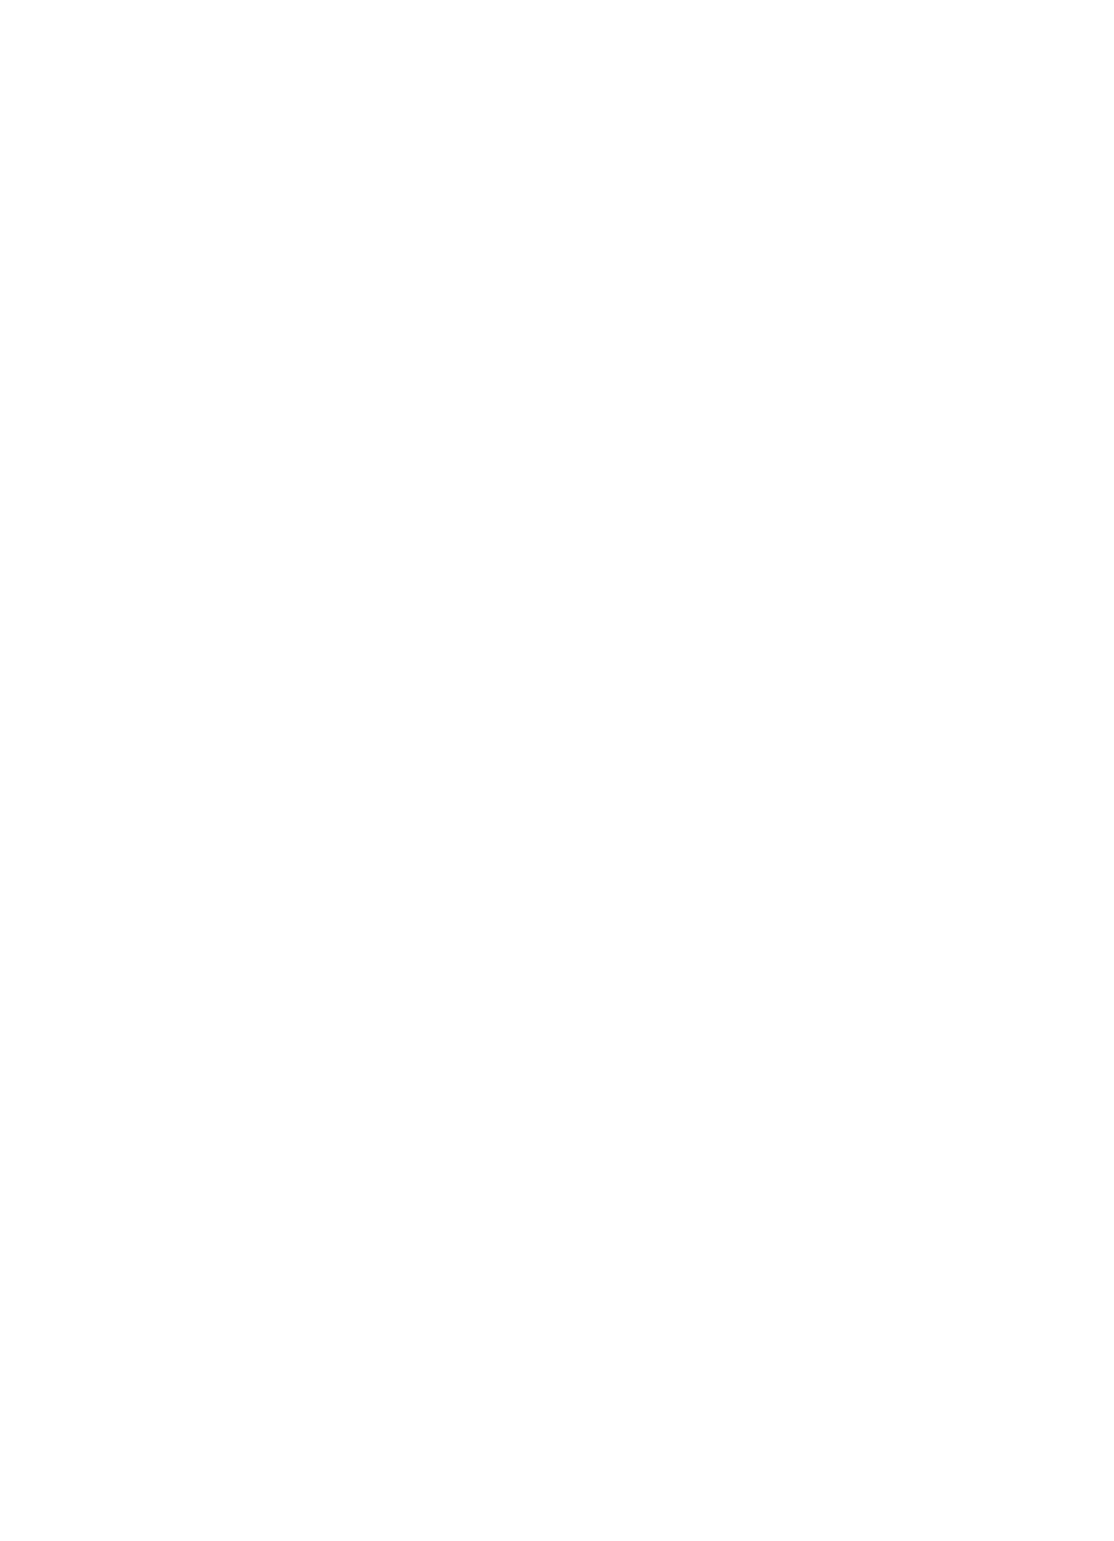 West Pharmaceutical logo pour fonds sombres (PNG transparent)